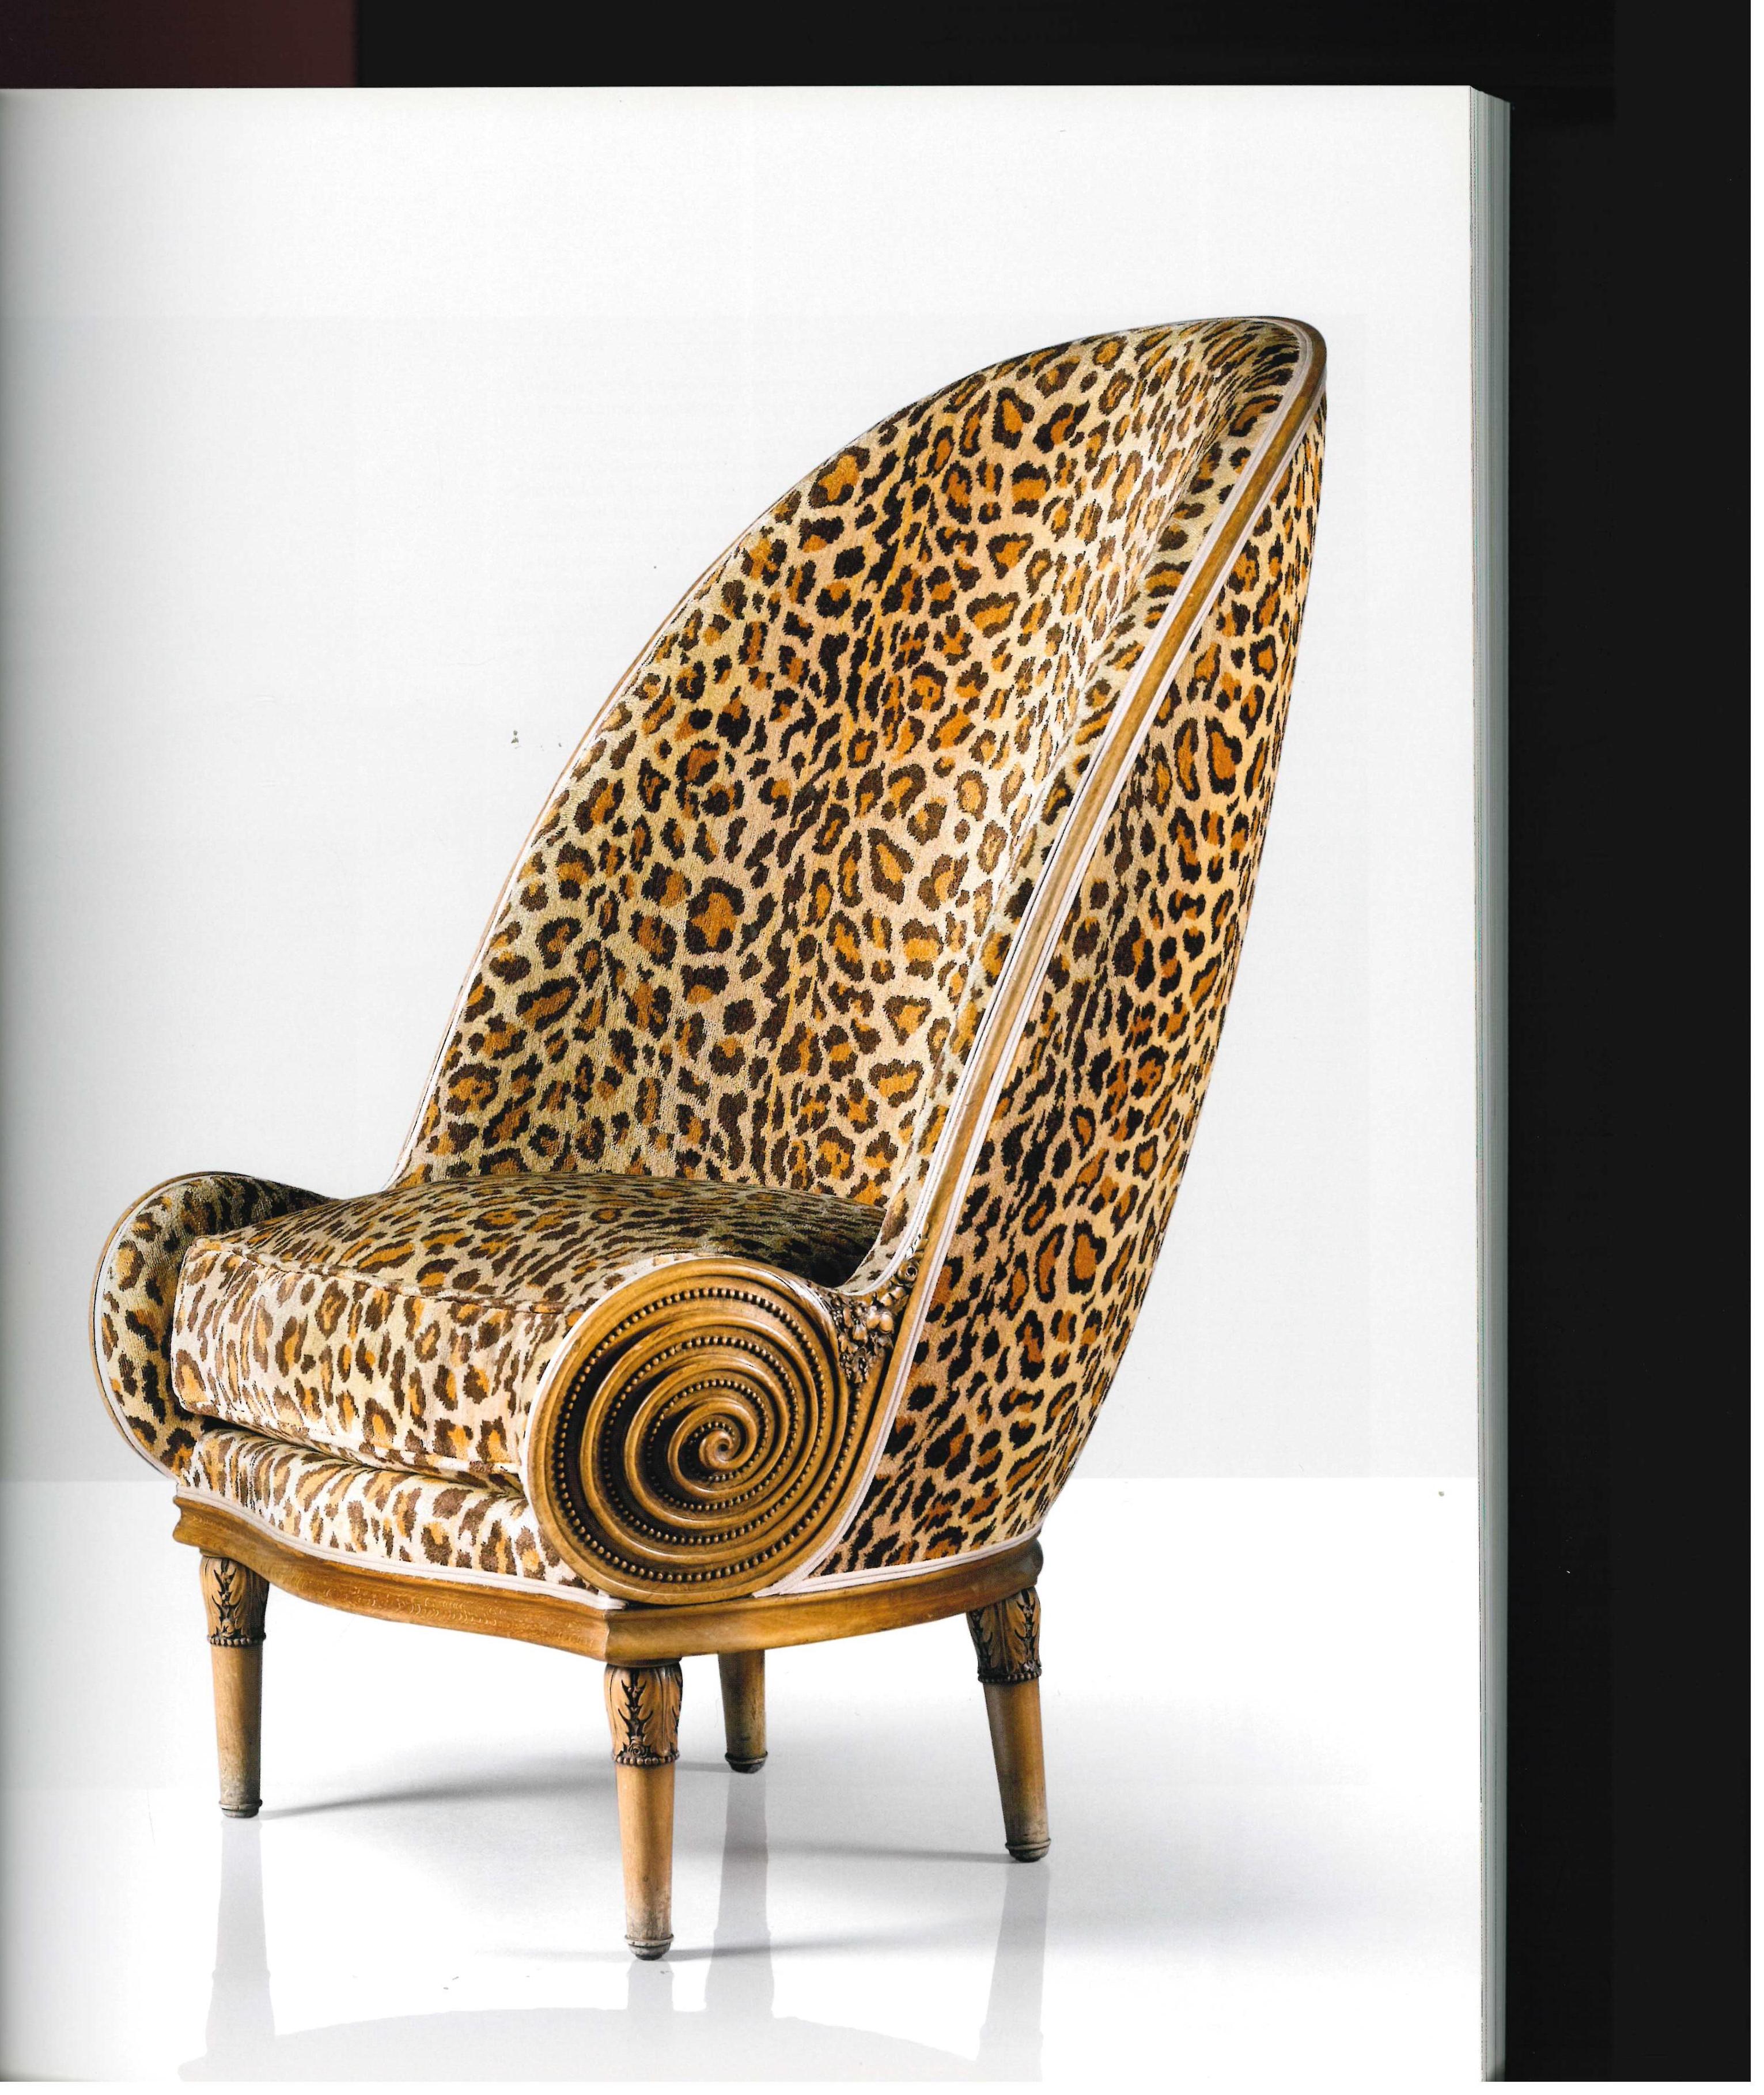 Il s'agit du catalogue publié en 2014 par Sotheby's pour la vente de la collection privée de Felix Marcilhac. Comme on pouvait s'y attendre, il s'agissait d'une des plus belles collections qui comprenait des exemples de meubles et d'arts décoratifs